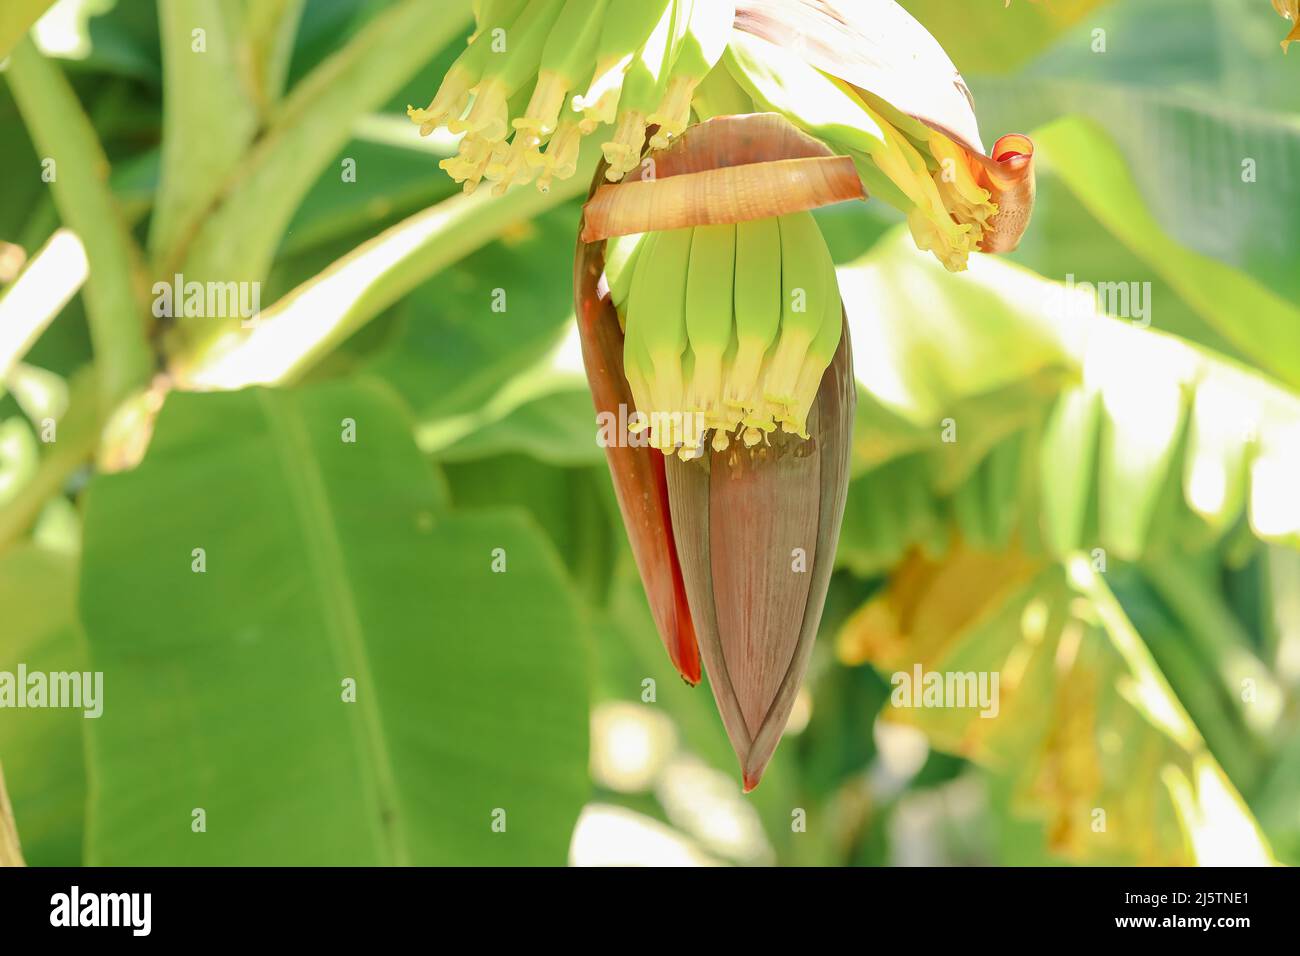 Banane giovani che crescono da fiori in piantagione tropicale nord-australiana Foto Stock